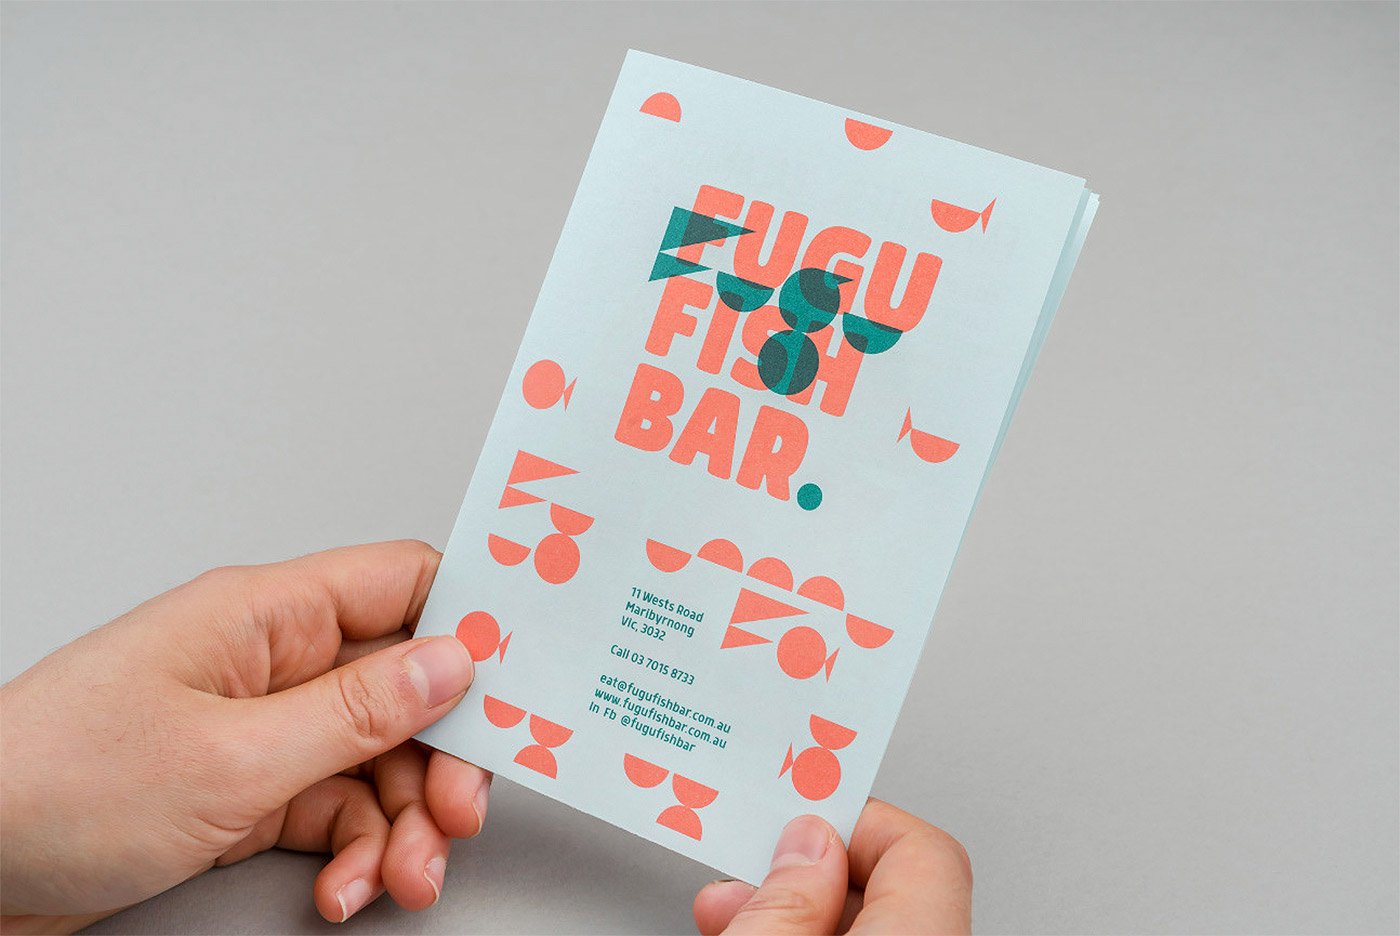 Fugu Fish Bar餐厅品牌视觉设计